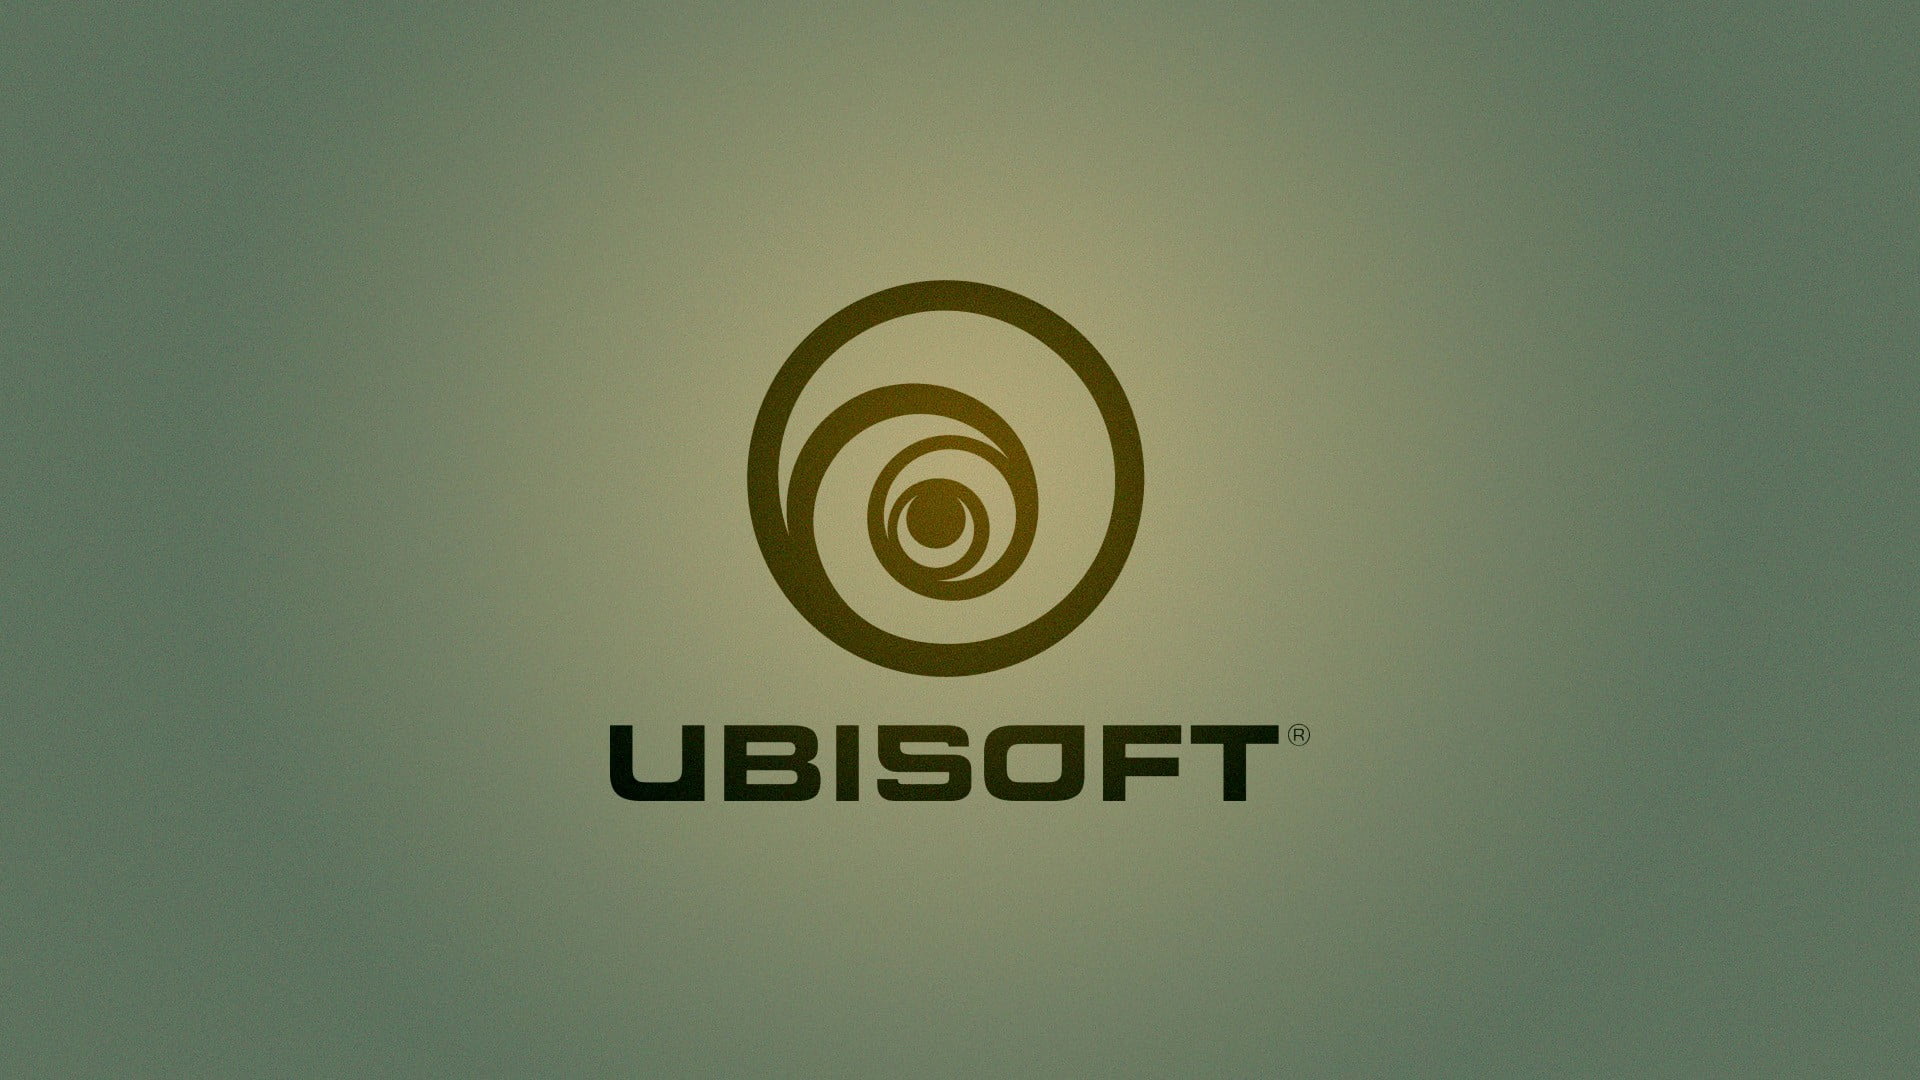 Ubisoft logo, Ubisoft, PC gaming